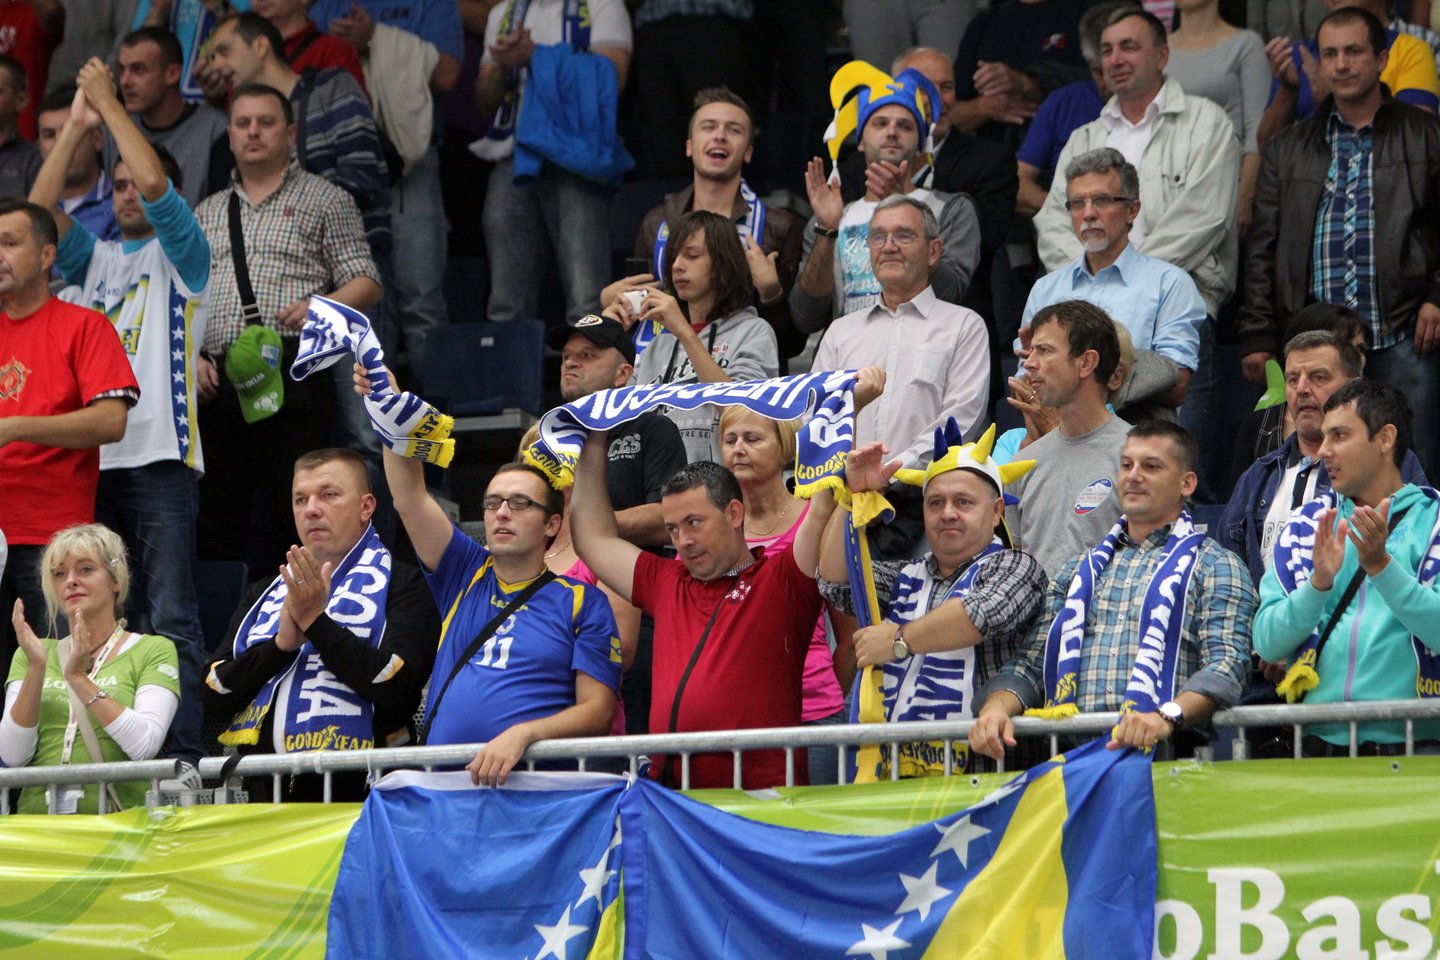  Lietuvos - Bosnijos ir Hercegovinos rungtynės 2013 metų Europos čempionate.<br> Nuotr. iš LR archyvo